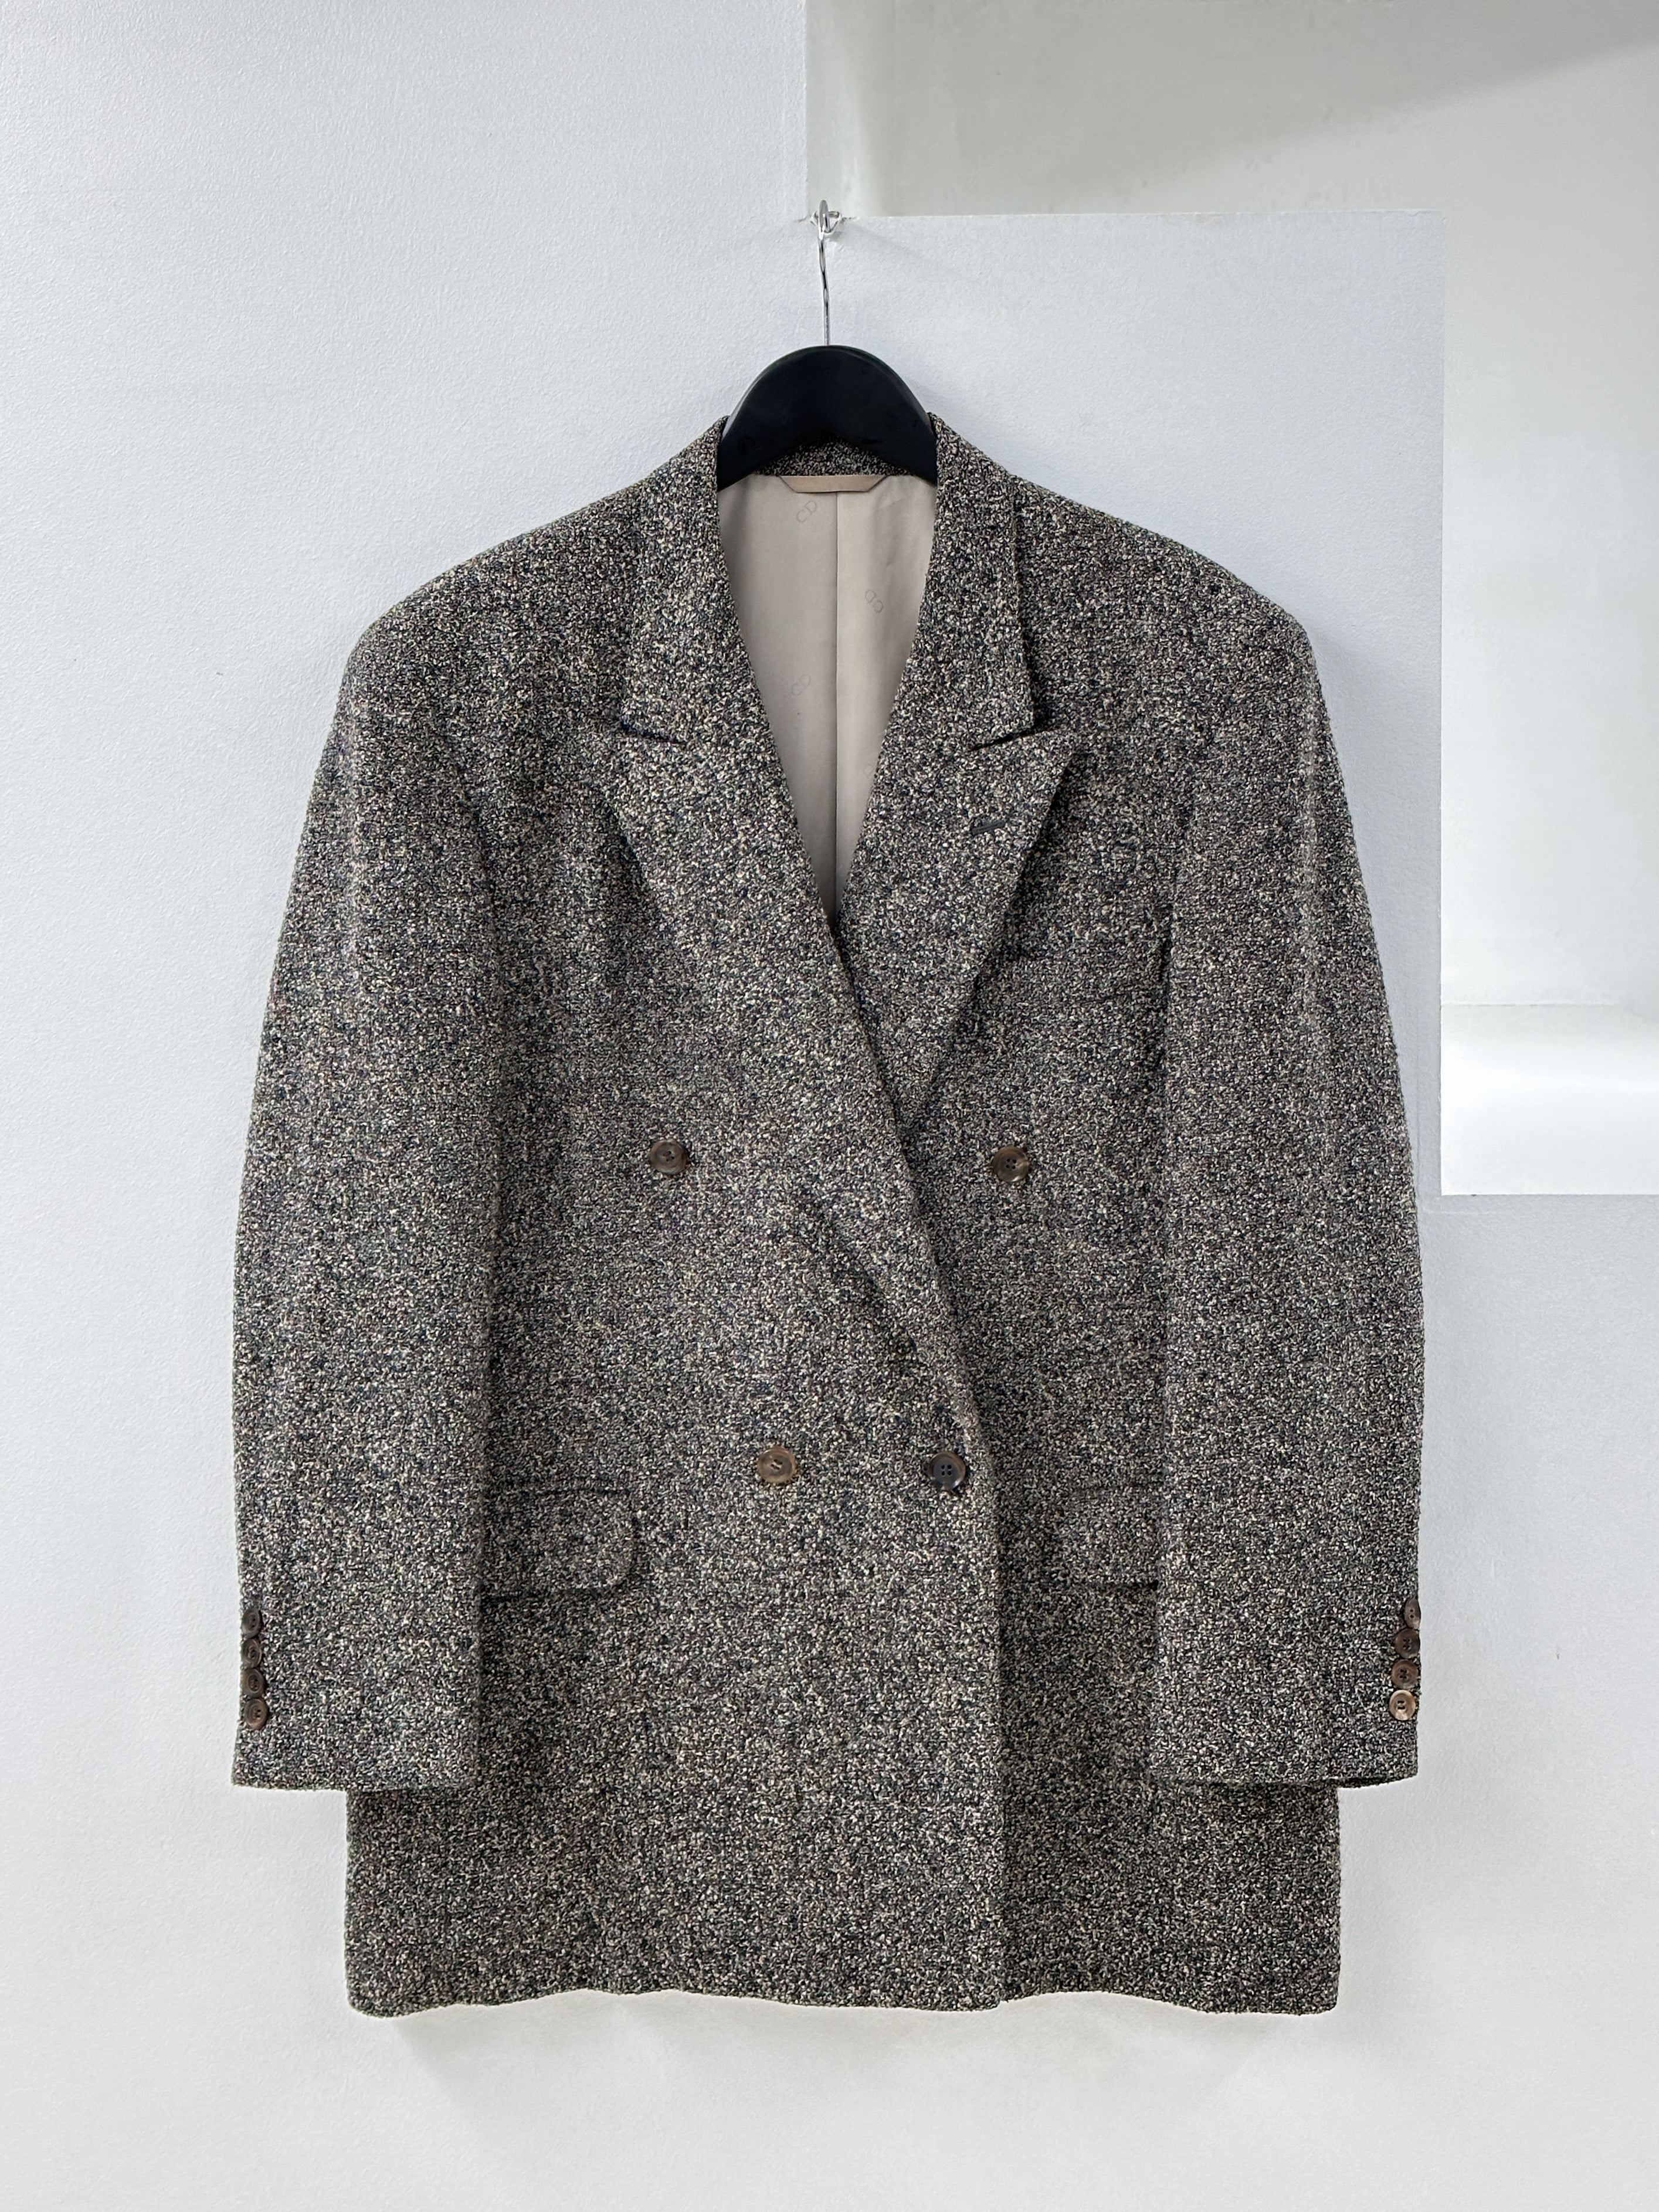 Christian Dior tweed jacket